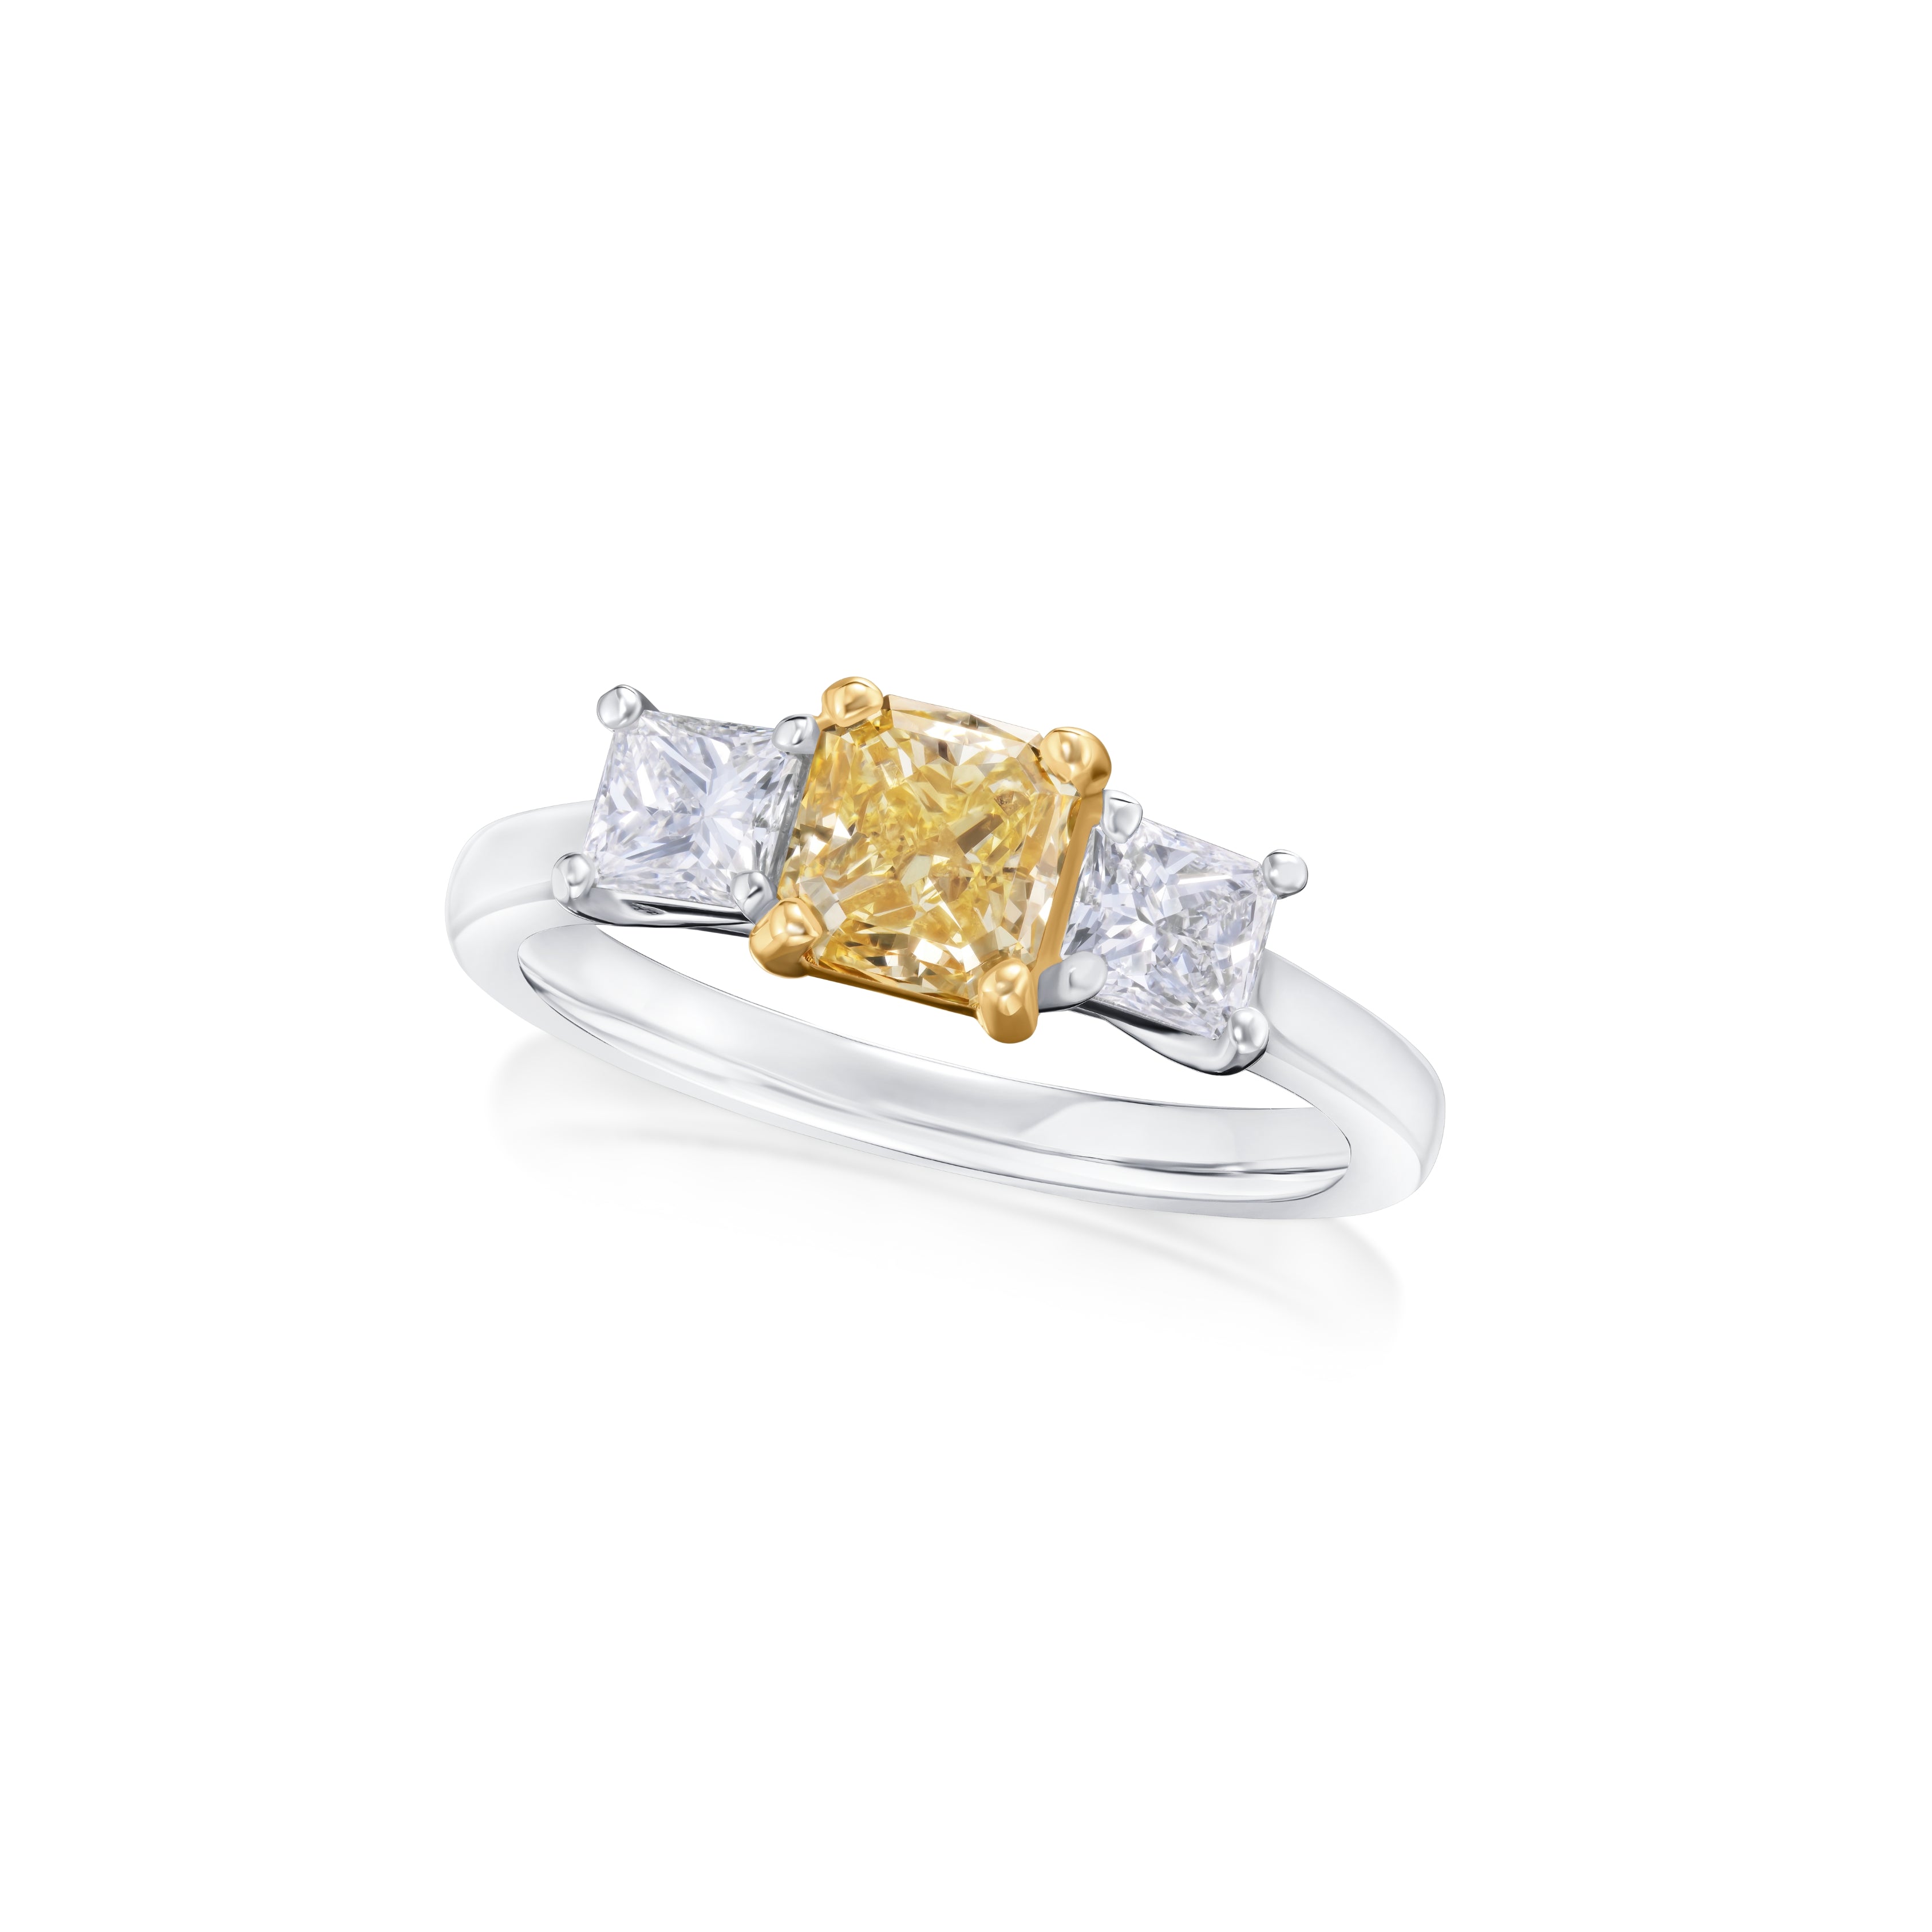 1.05cts Yellow and White Diamond Three Stone Ring